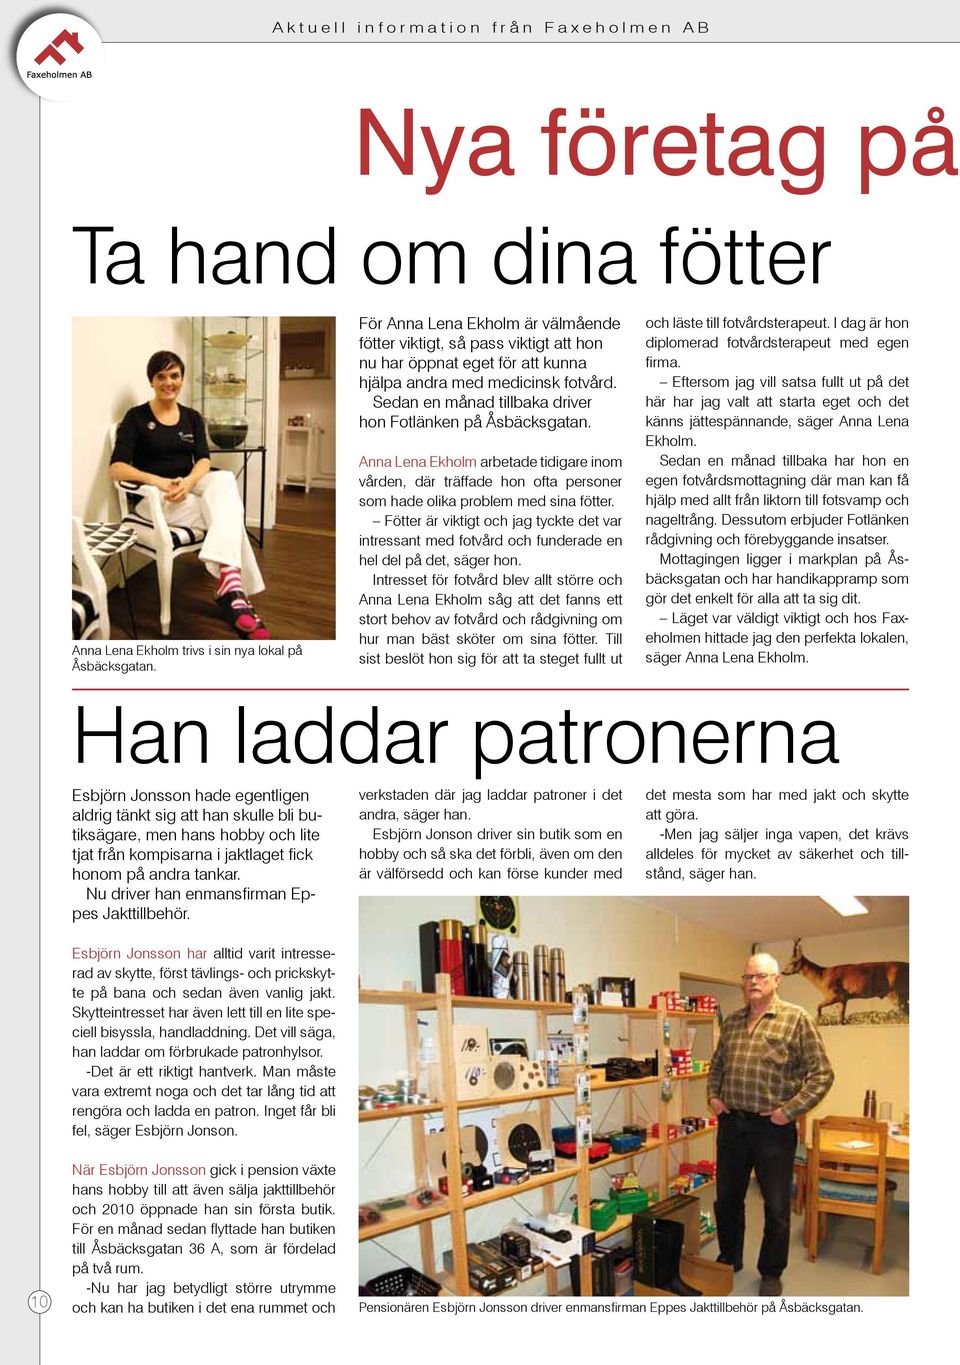 Sedan en månad tillbaka driver hon Fotlänken på Åsbäcksgatan. Anna Lena Ekholm arbetade tidigare inom vården, där träffade hon ofta personer som hade olika problem med sina fötter.